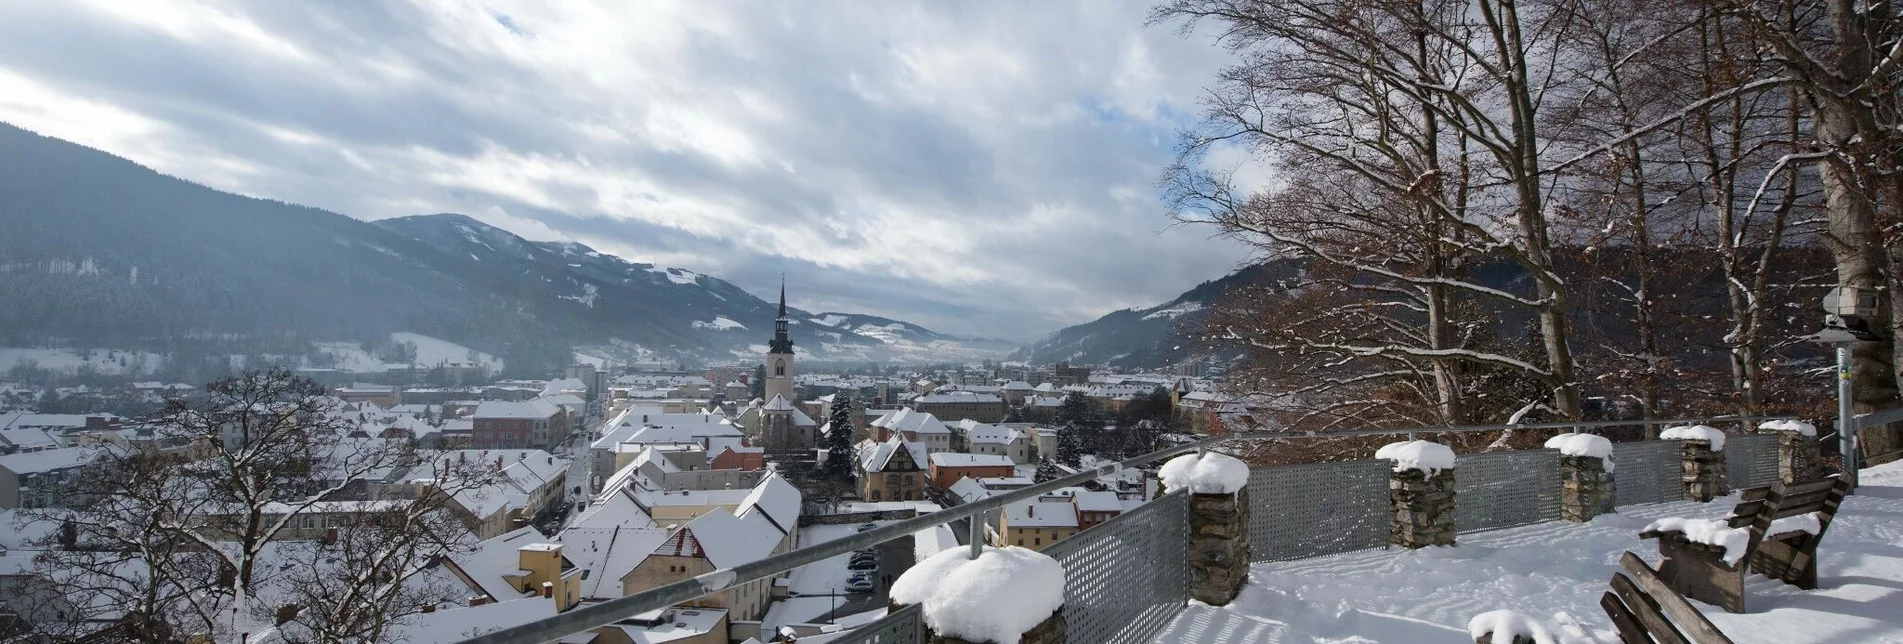 Winter Hiking Winterwanderung auf´s Rennfeld - Touren-Impression #1 | © TV Hochsteiermark